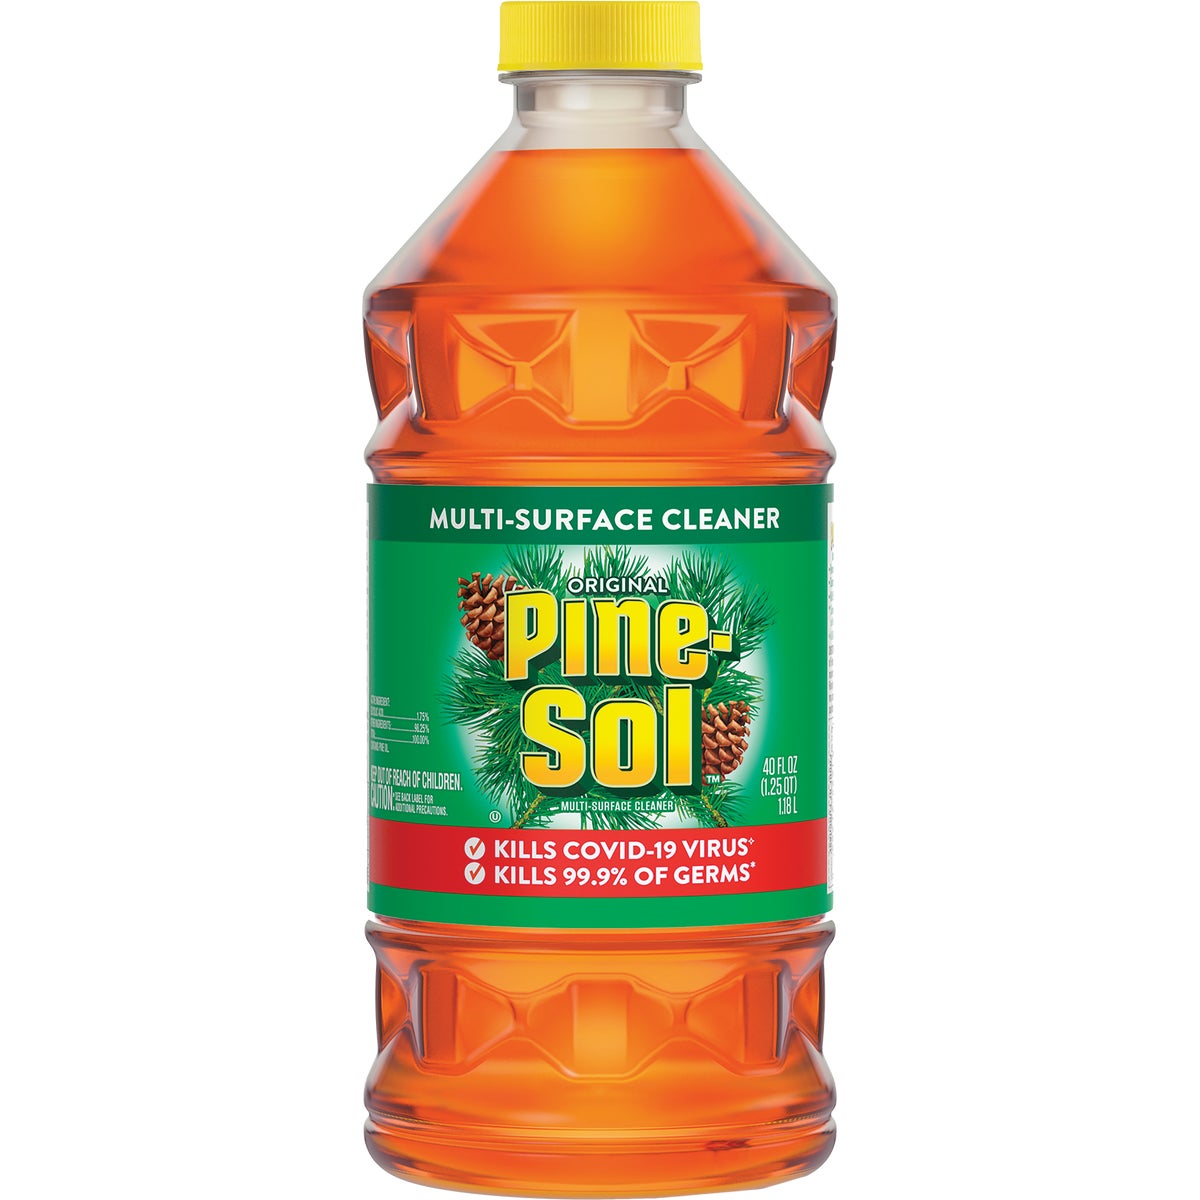 Pine-Sol 40 Oz. Original All-Purpose Disinfectant Cleaner